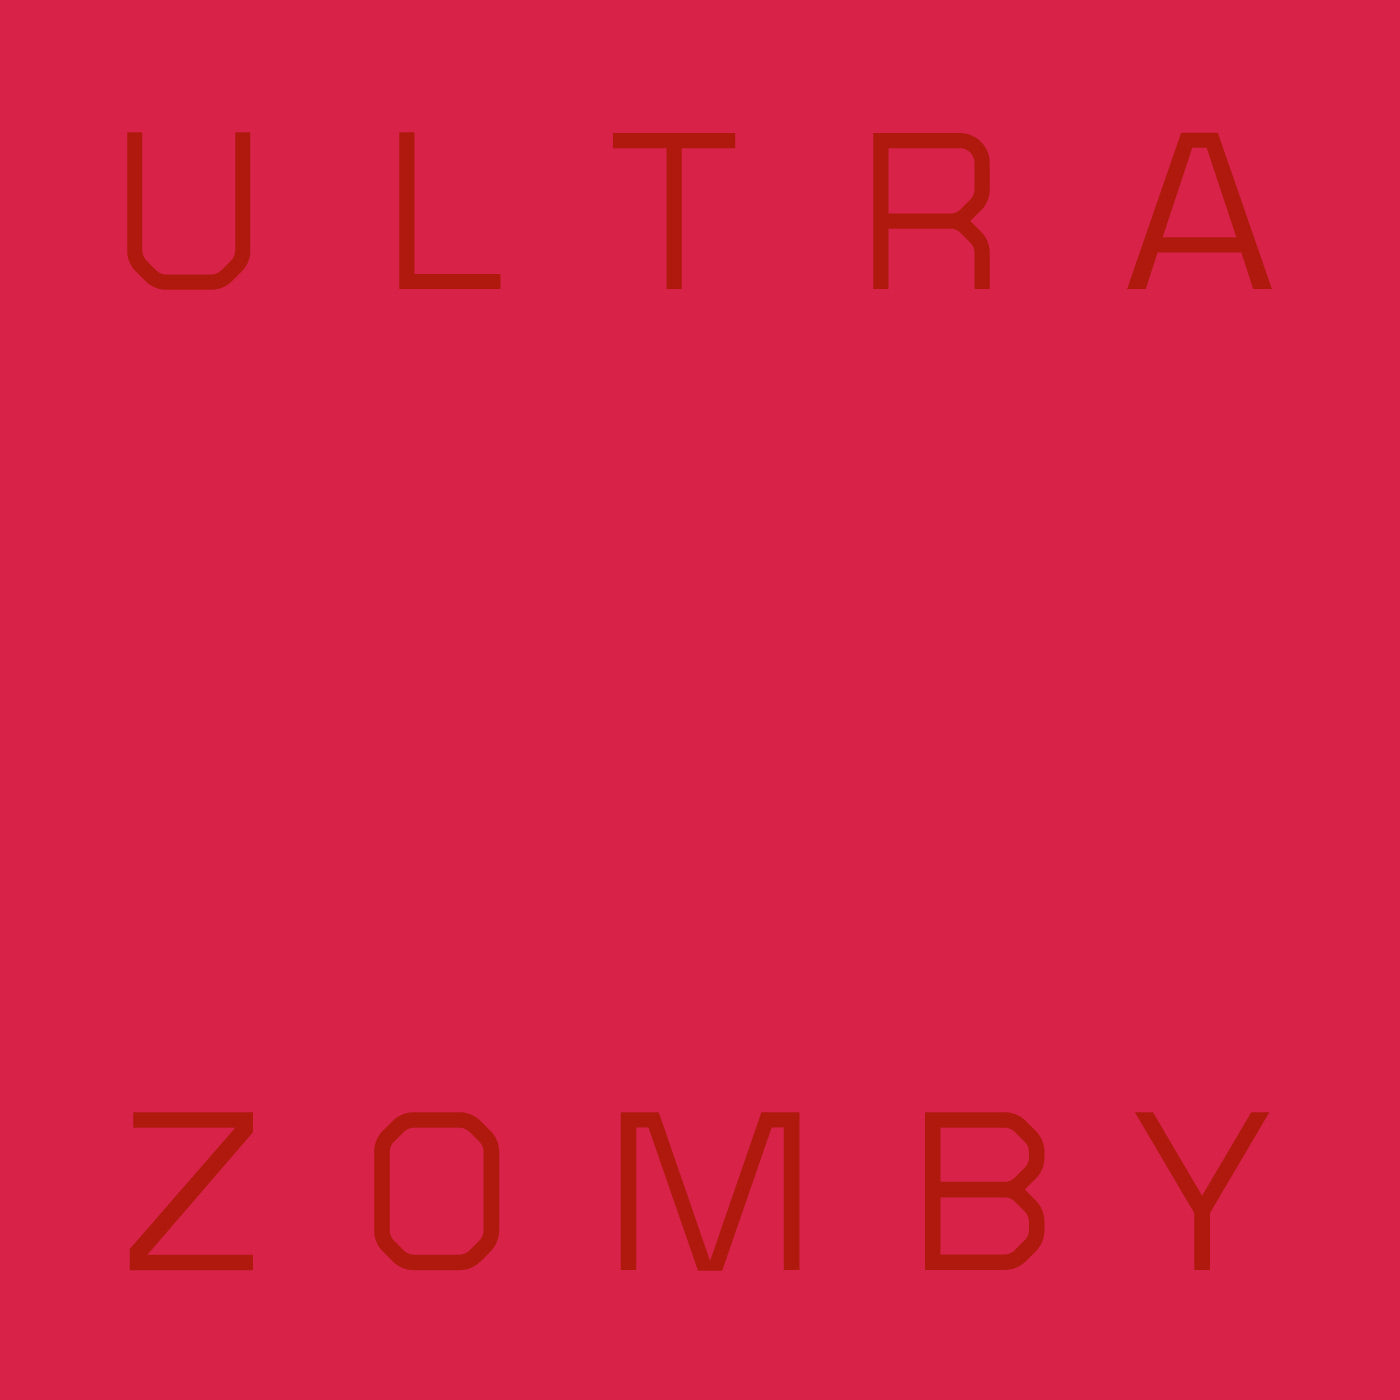 Zomby - Ultra (Vinyl)